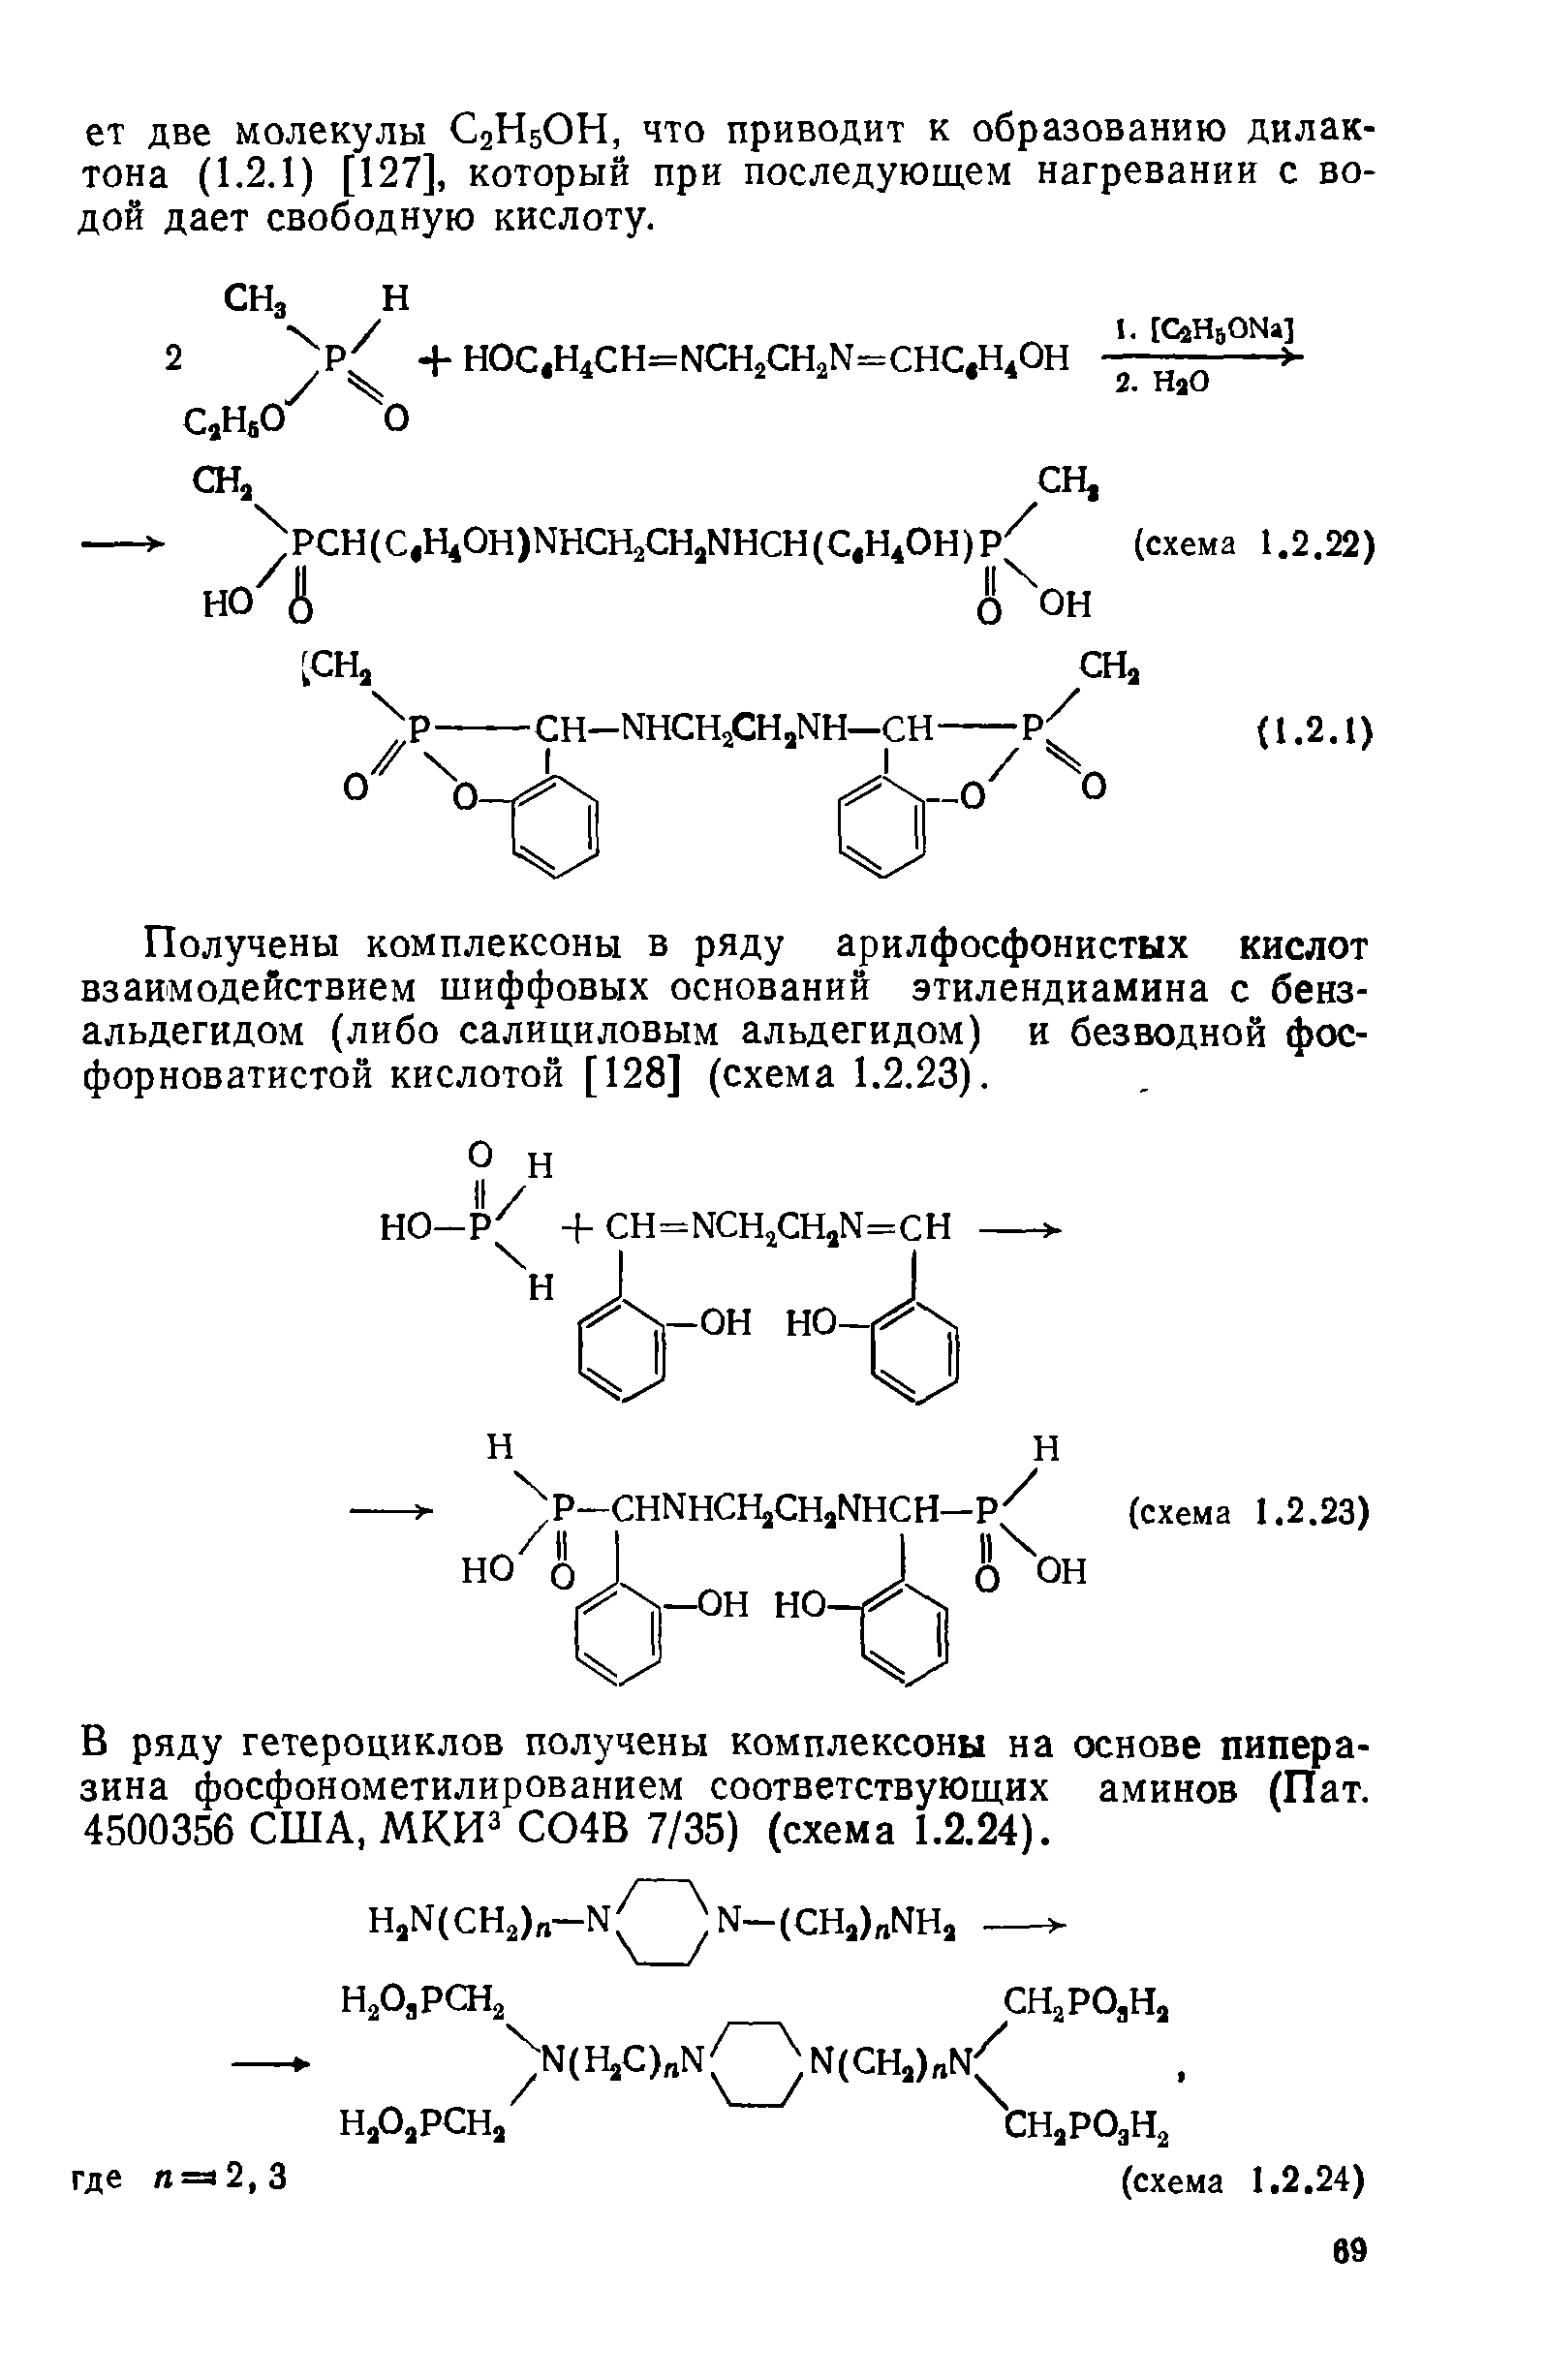 Получены комплексоны в ряду арилфосфонистых кислот взаимодействием шиффовых оснований этилендиамина с бенз-альдегидом (либо салициловым альдегидом) и безводной фос-форноватистой кислотой [128] (схема 1.2.23).